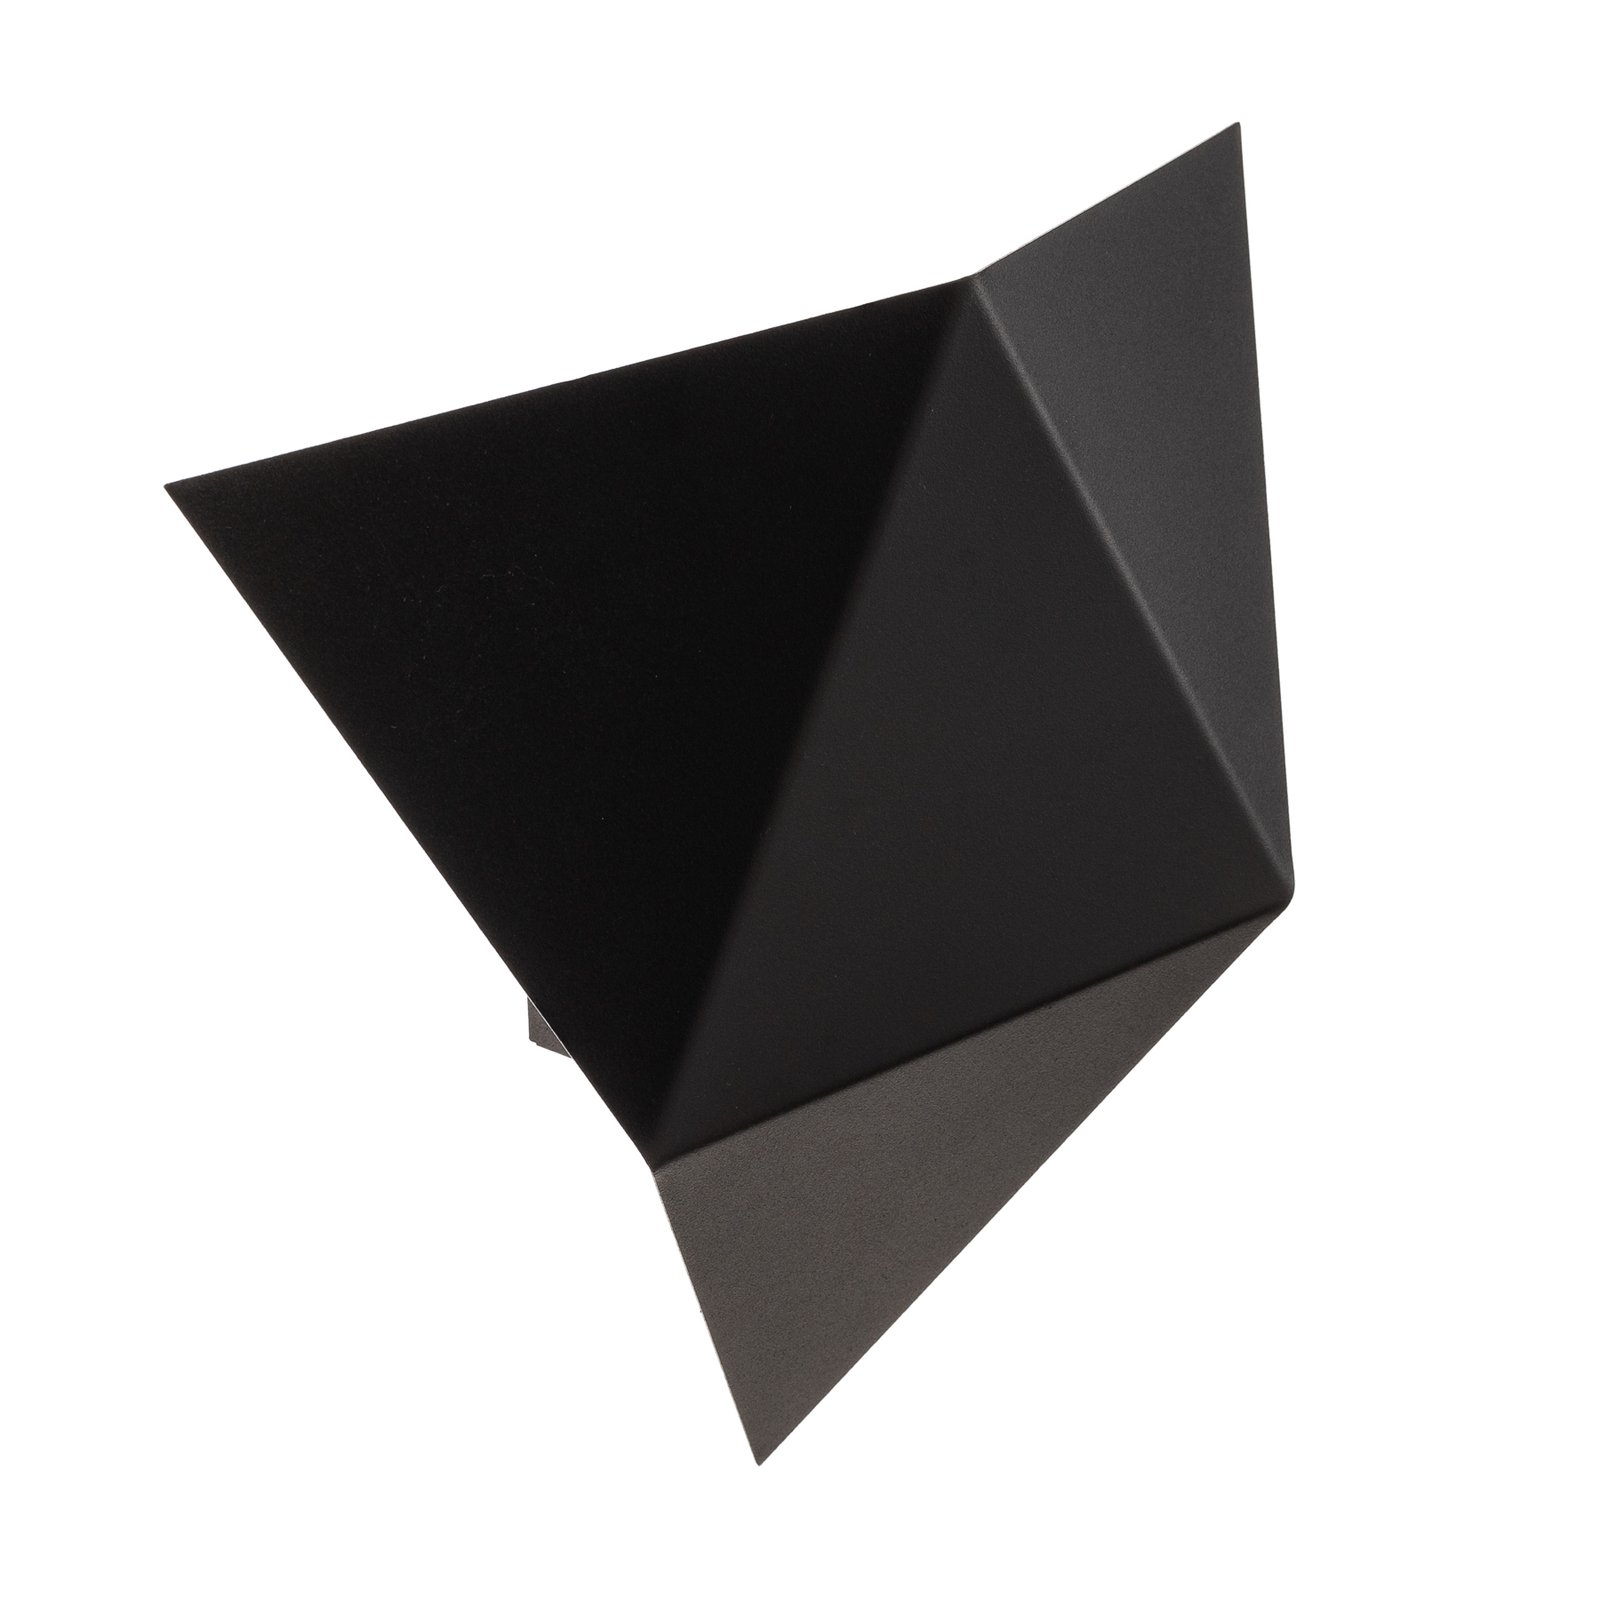 Wandlamp Shield in hoekige vorm, zwart